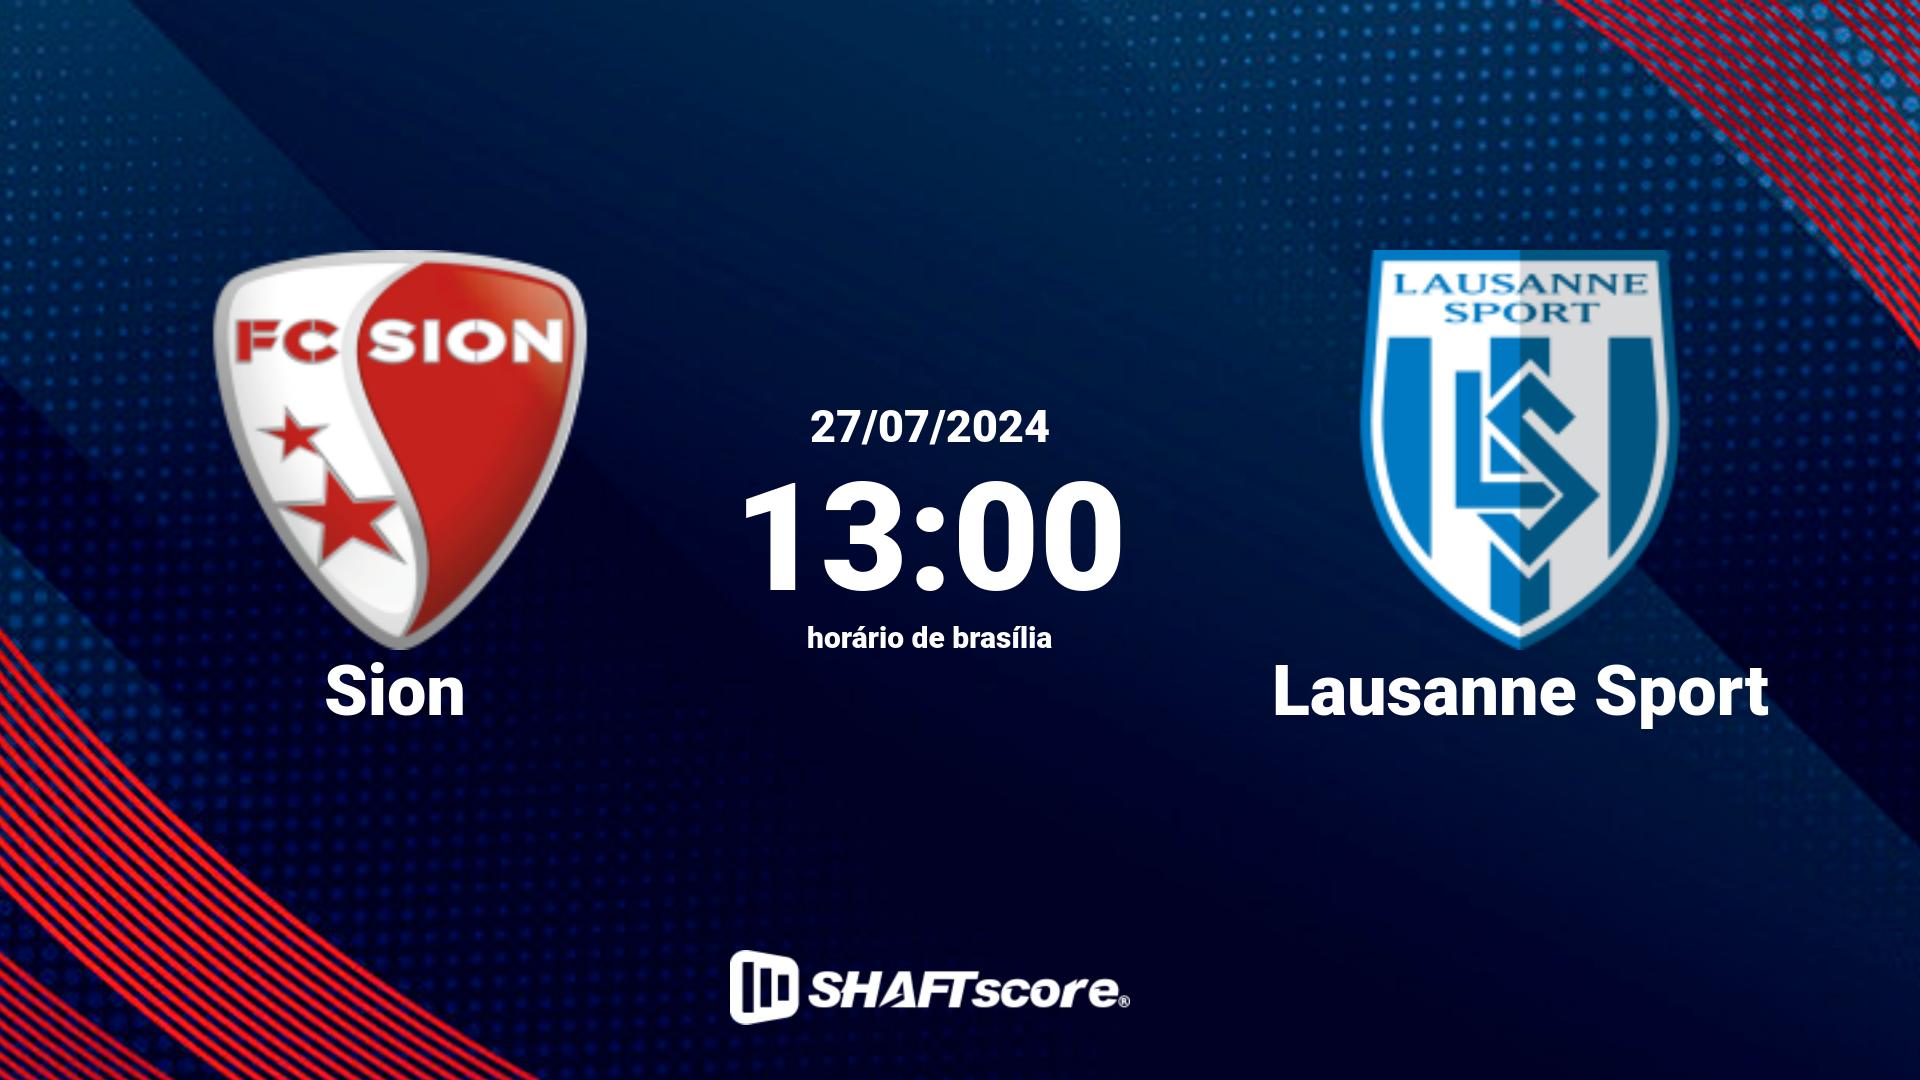 Estatísticas do jogo Sion vs Lausanne Sport 27.07 13:00